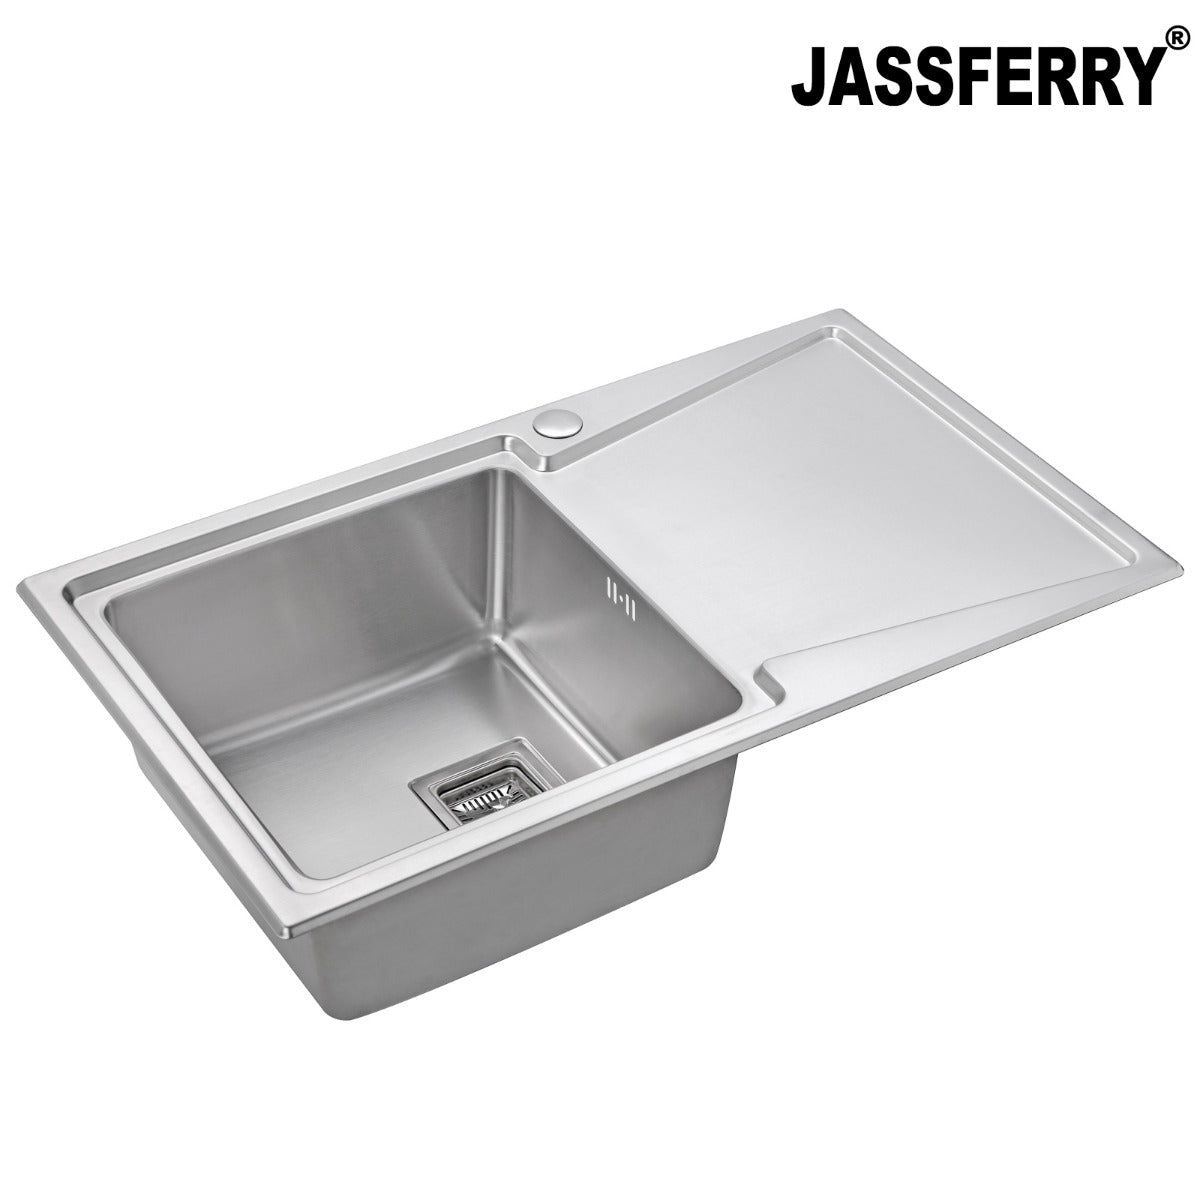 JassferryJASSFERRY Brilliant Stainless Steel Kitchen Sink Single 1 Bowl Righthand Drainer - 671Kitchen Sinks